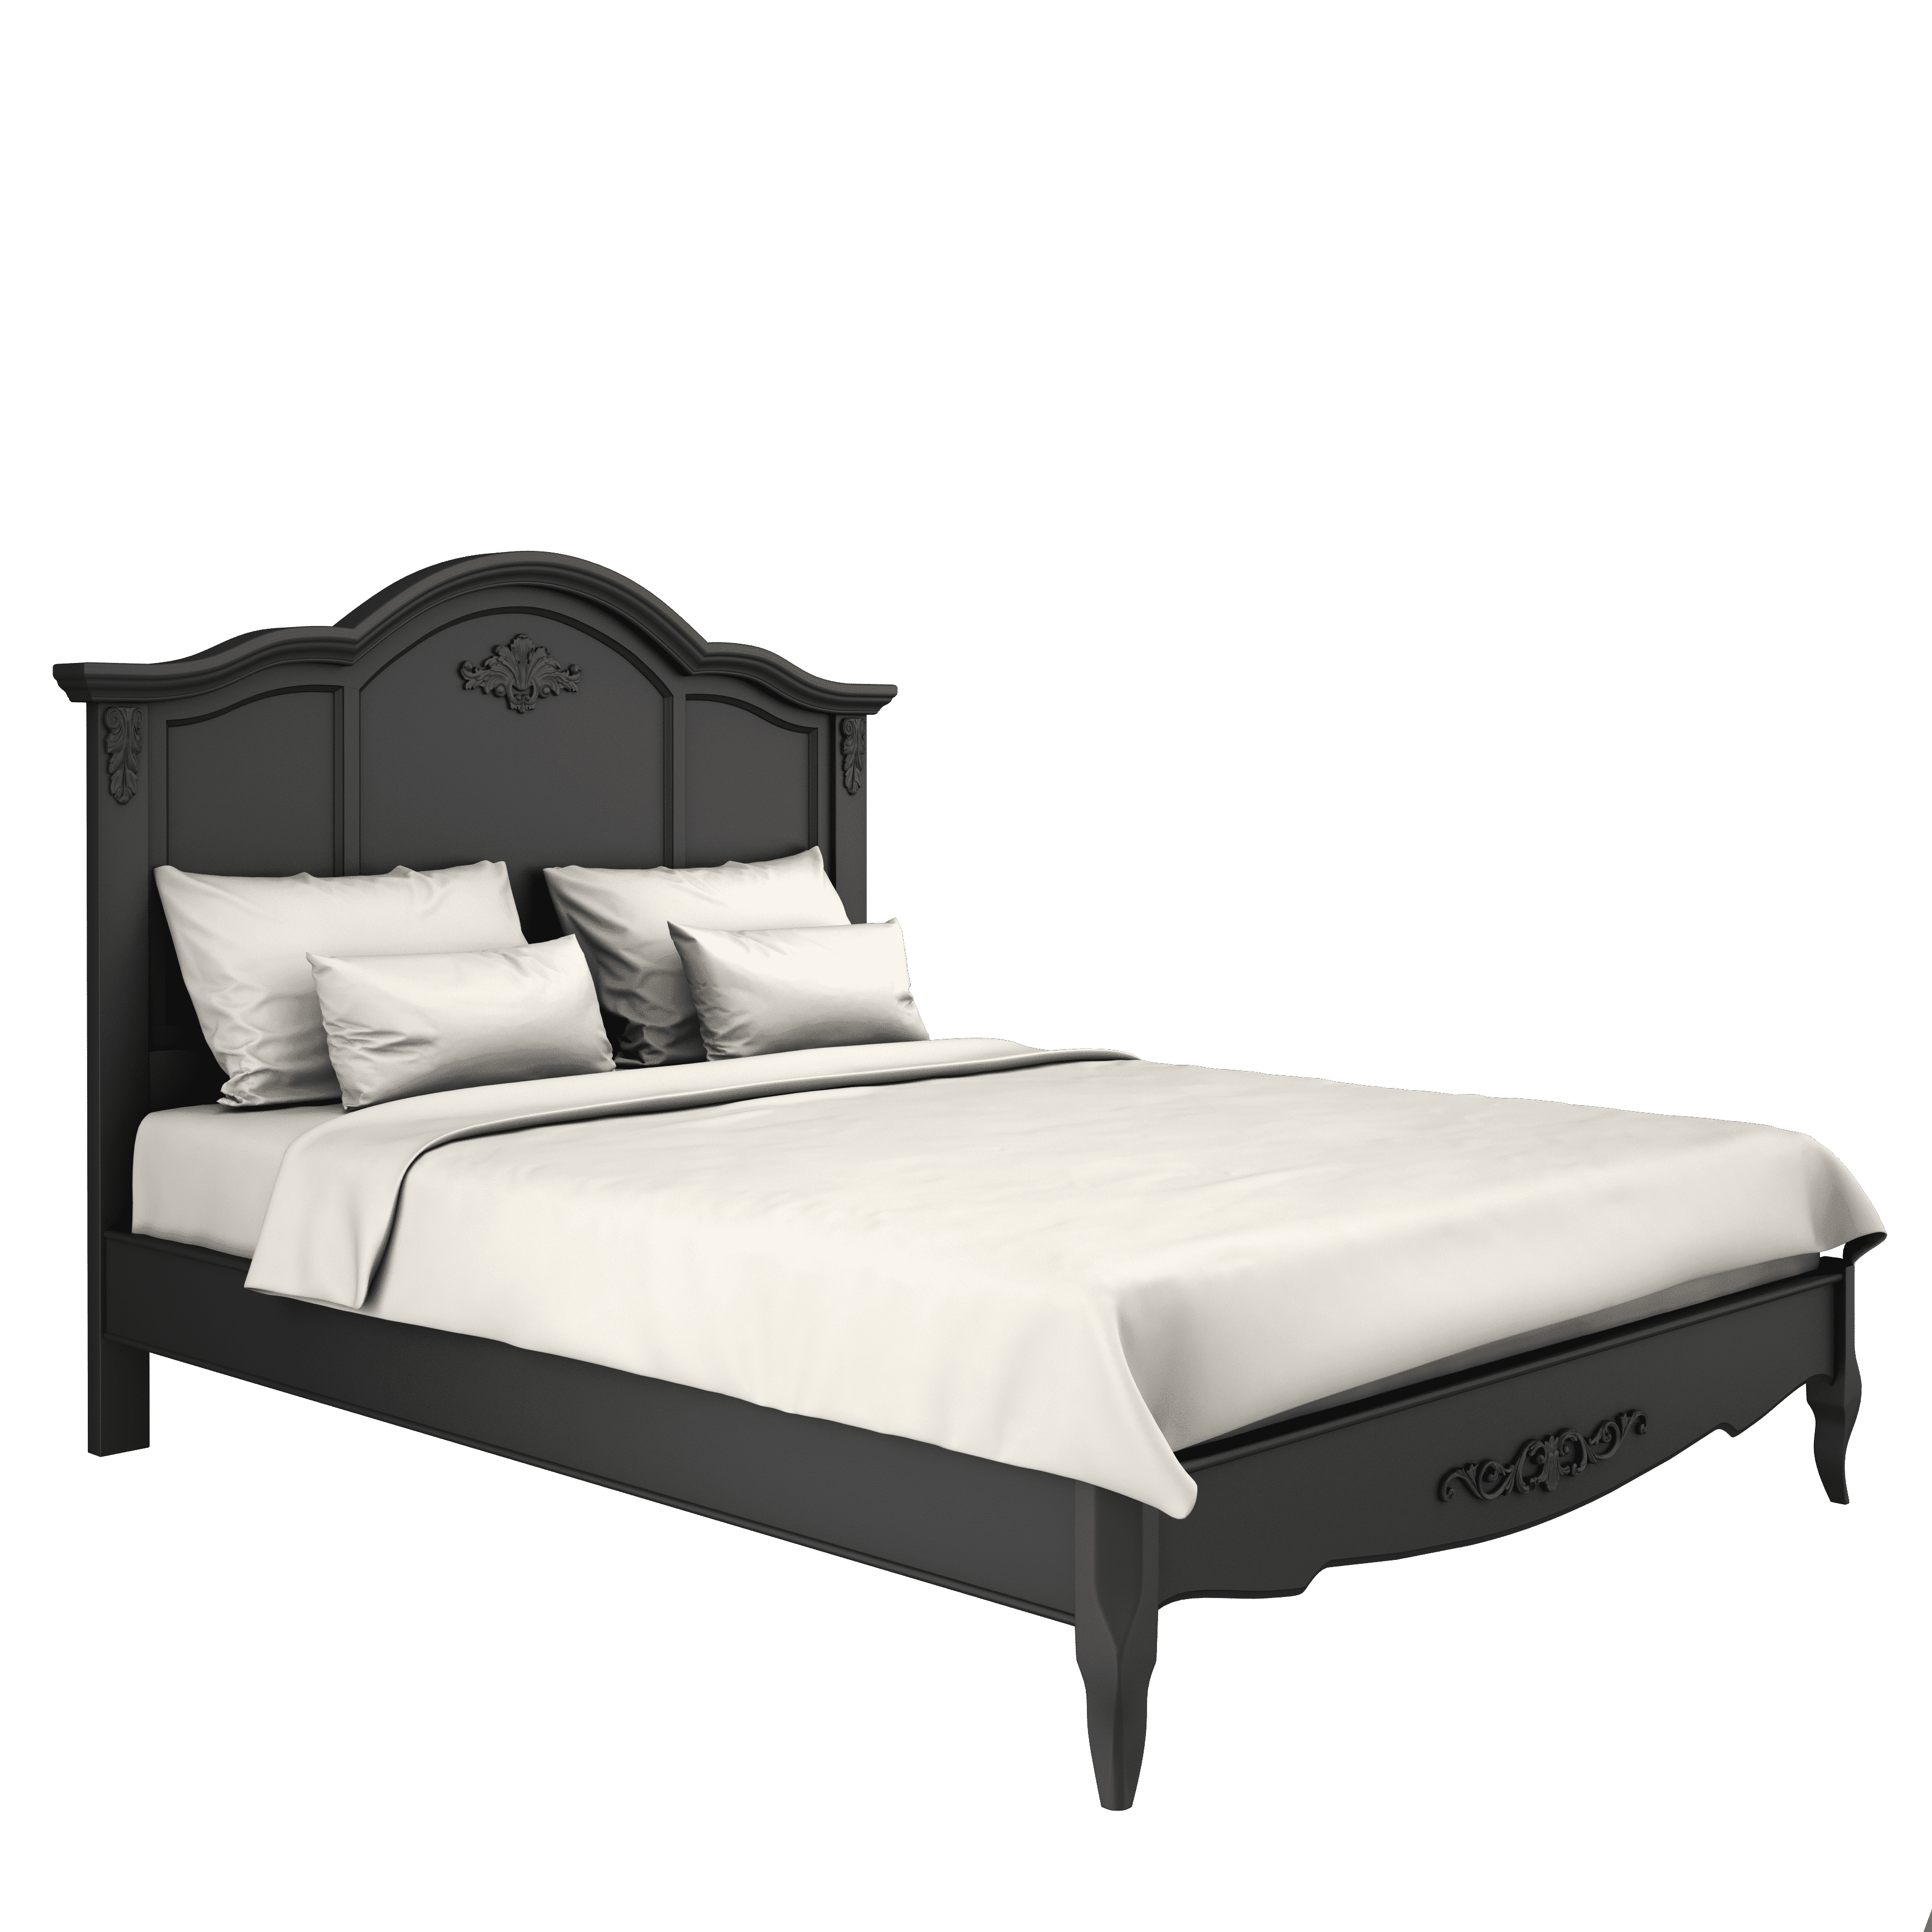 Кровать Marseille Night, двуспальная, 160x200 см, цвет: черный (B206BL)B206BL